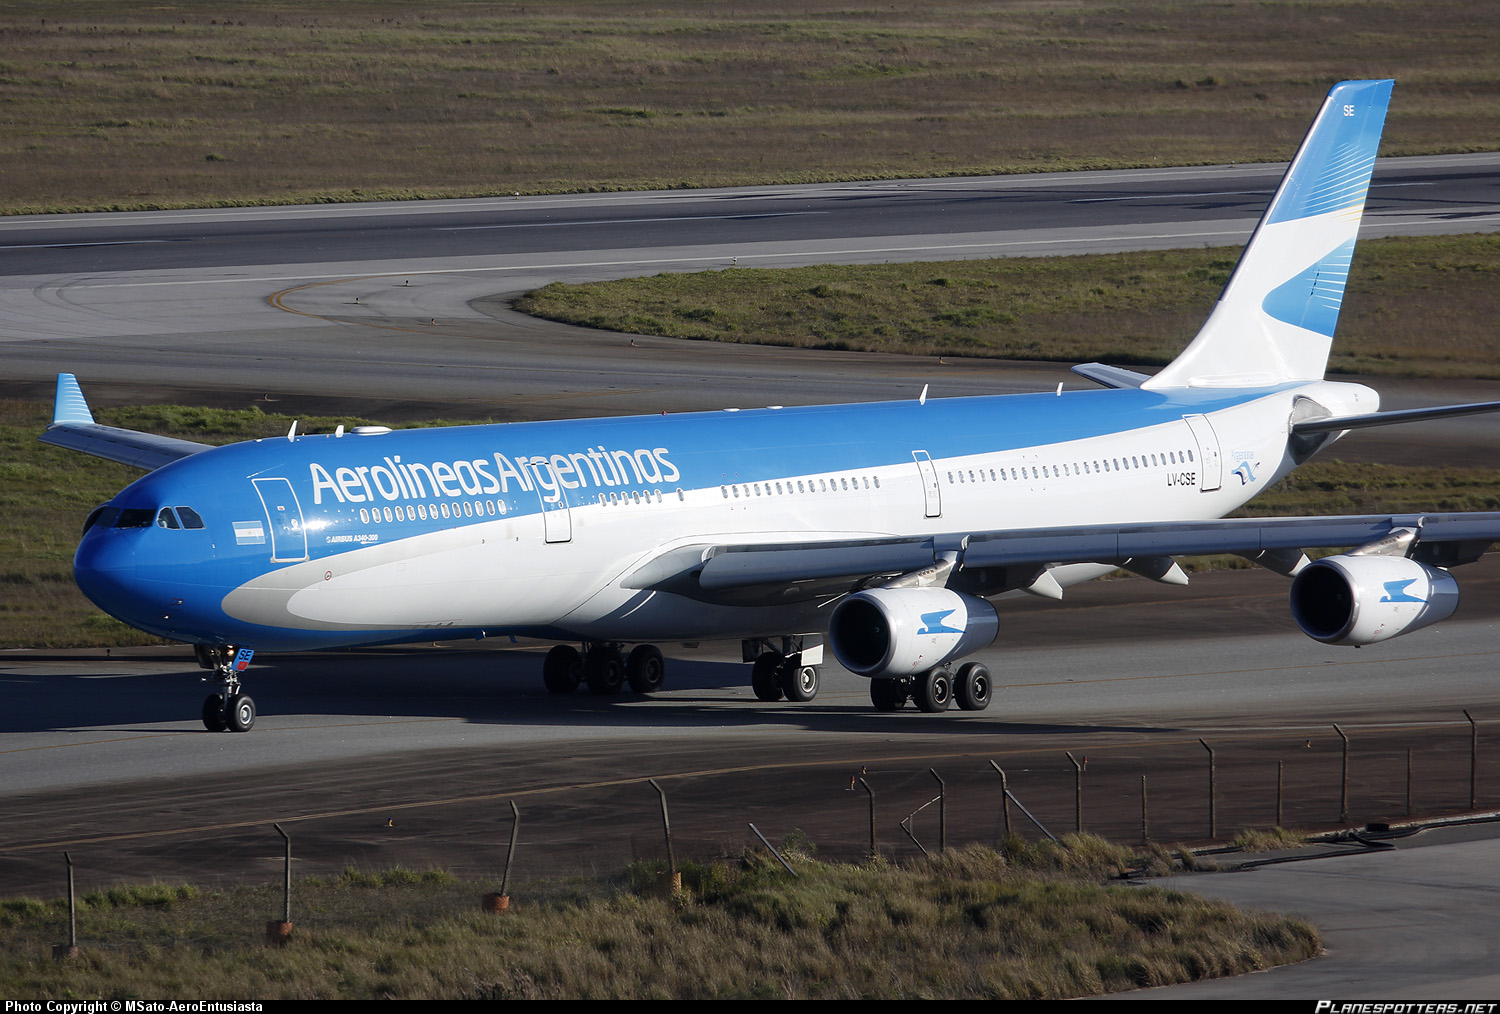 Renuncia titular de Aerolíneas Argentinas nombrado por el kirchnerismo